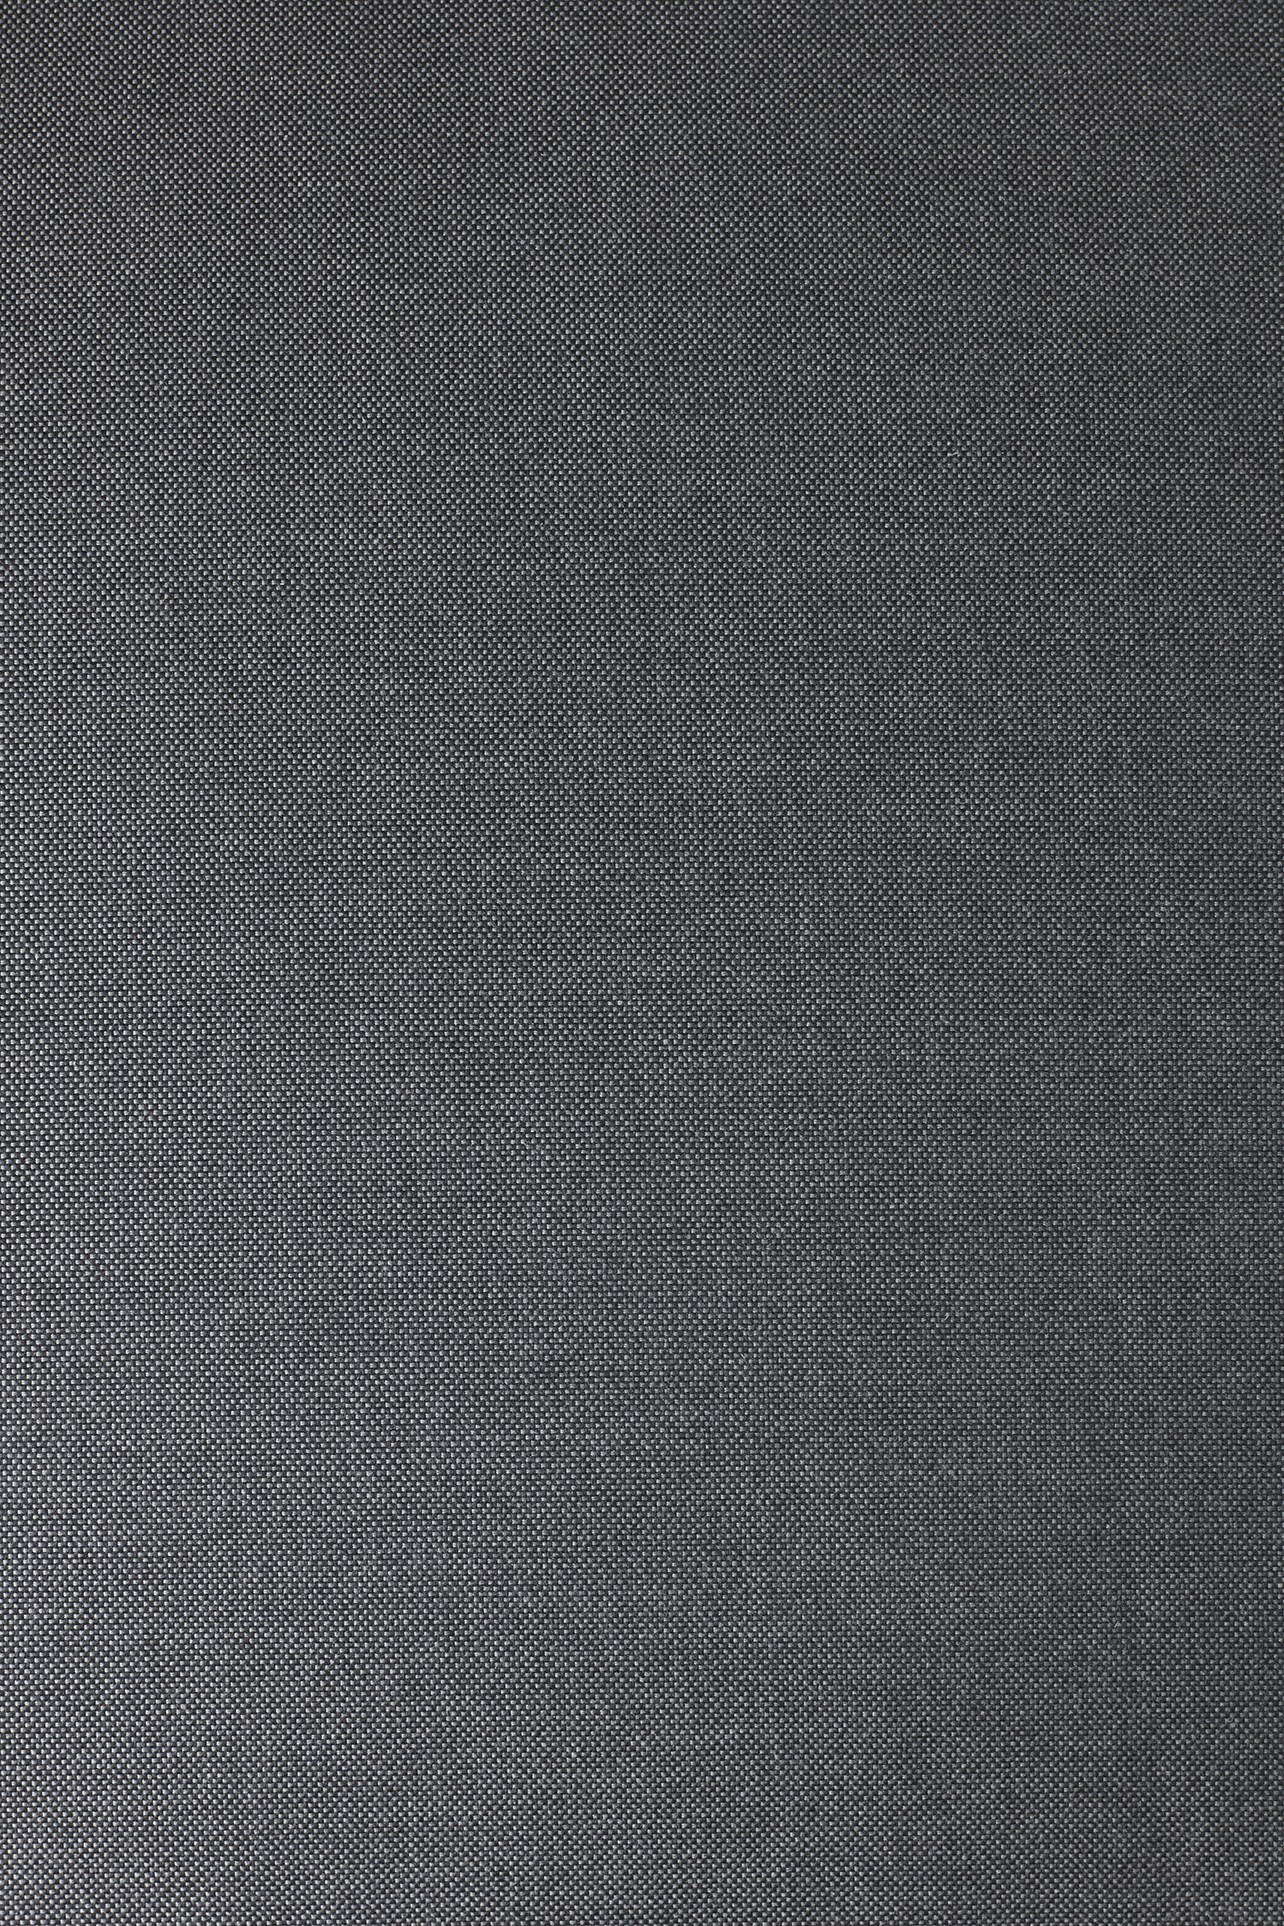 Obrázek z Venkovní lehátko STAY 80 cm šedočerné 